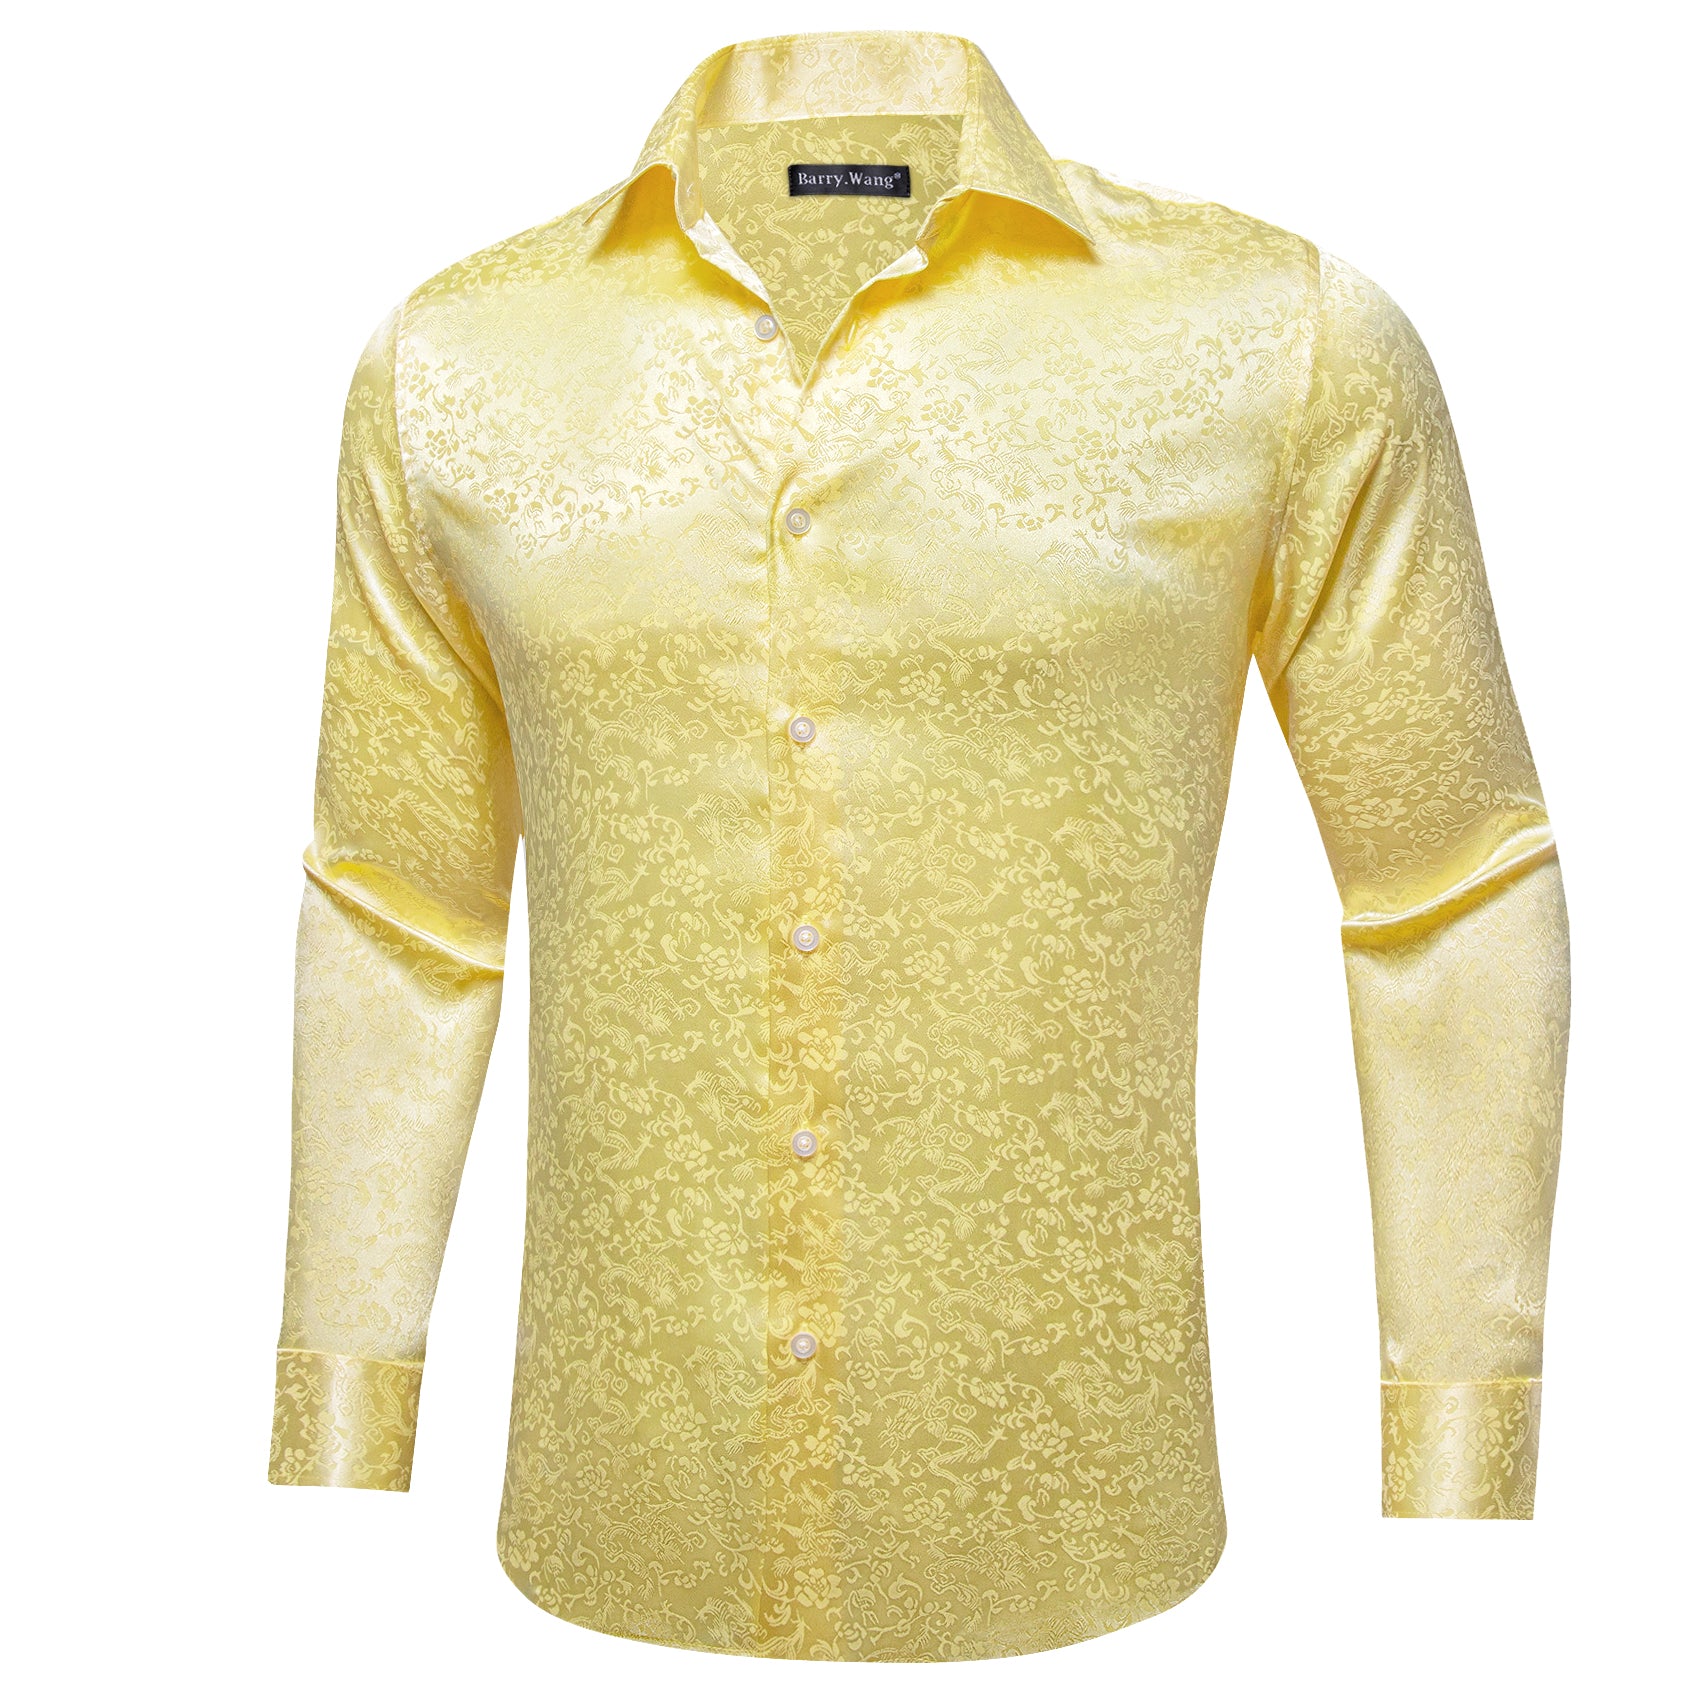 Barry.wang Mist Yellow Floral Silk Men's Shirt